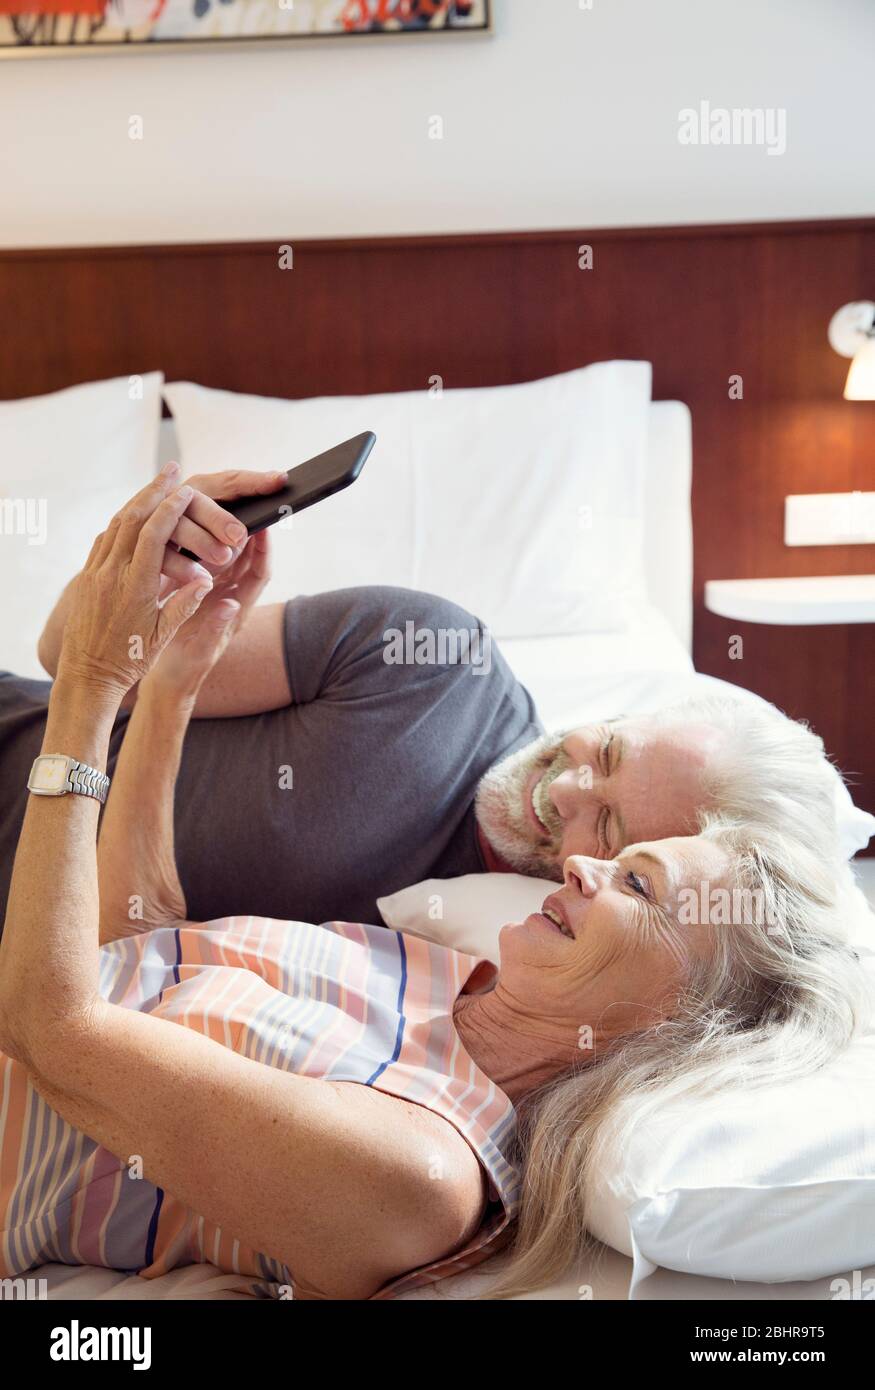 Una coppia sdraiata su un letto che guarda un telefono cellulare. Foto Stock